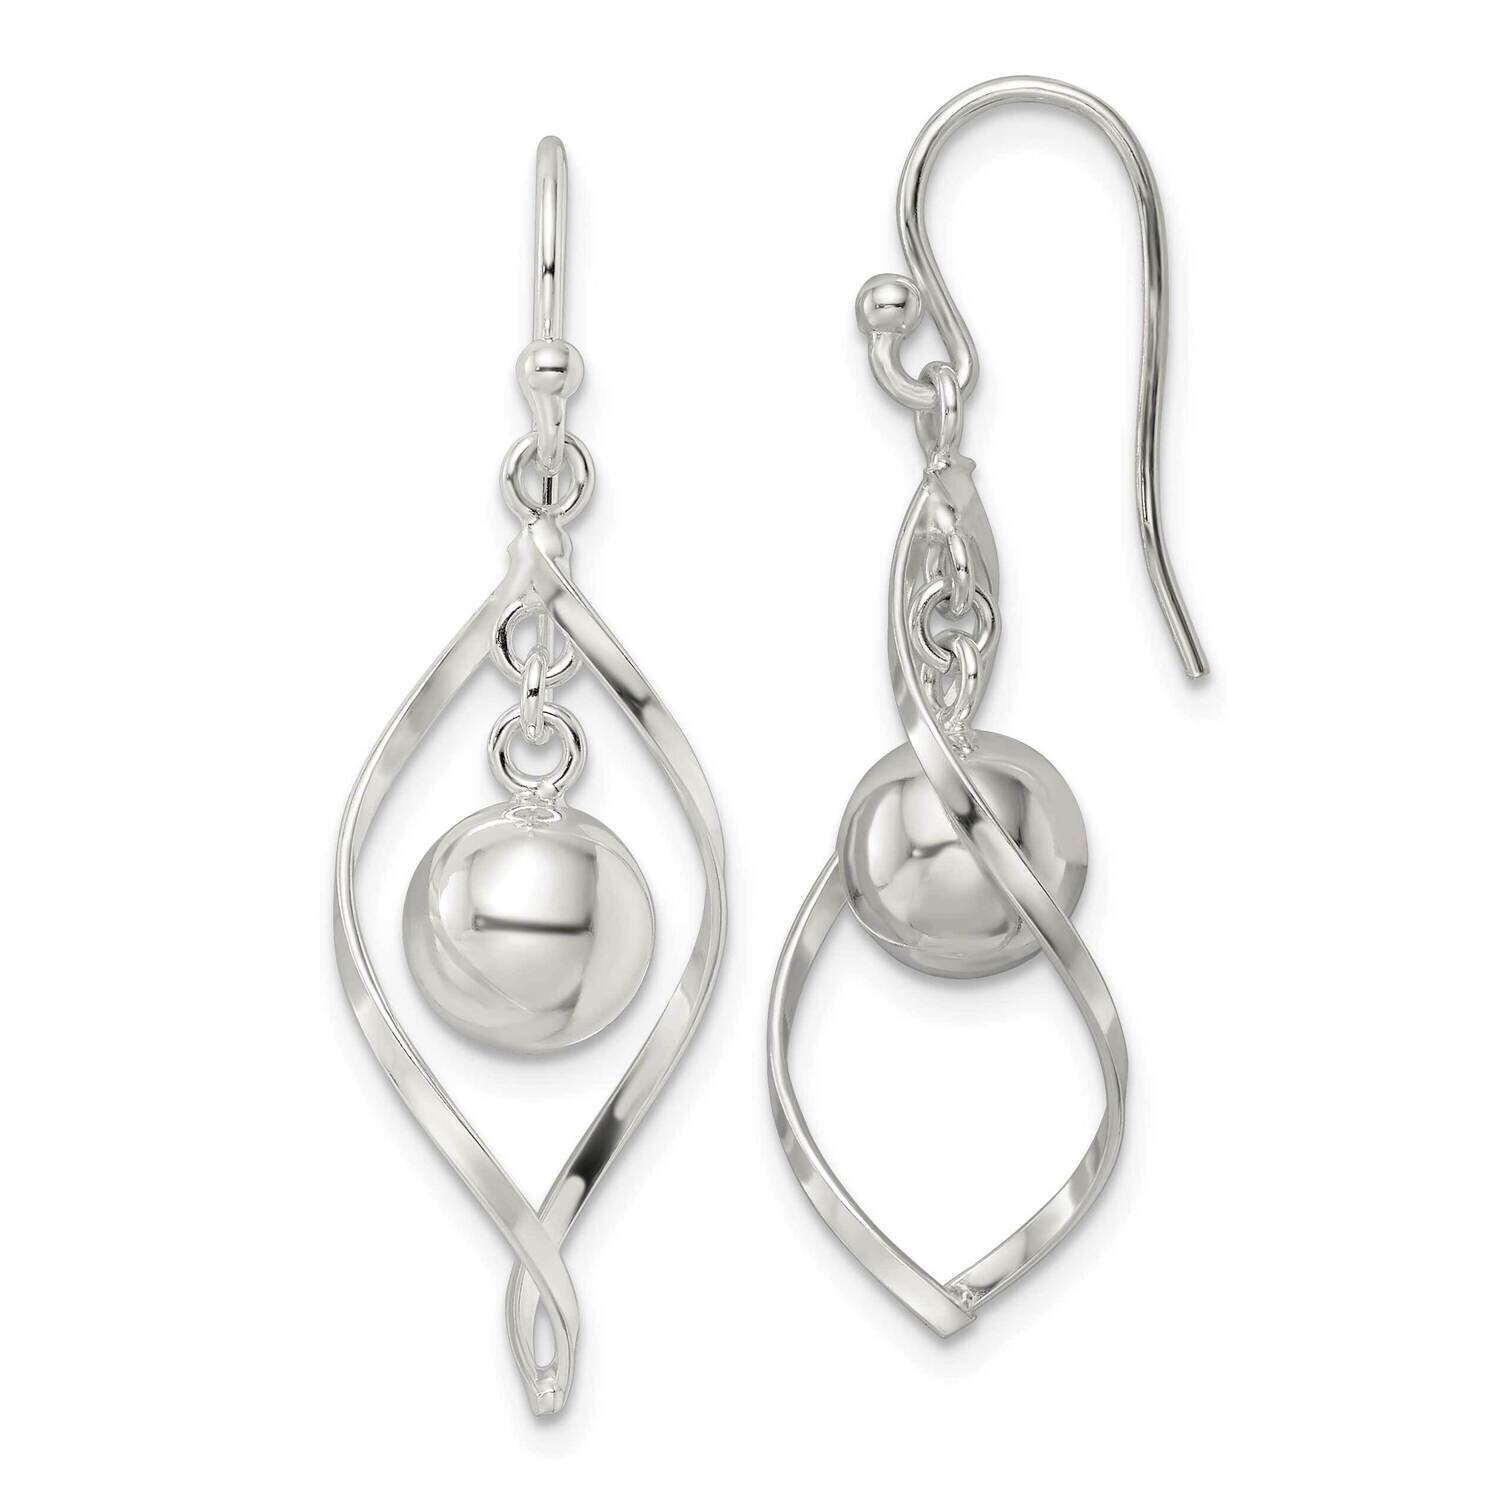 Twist and Ball Dangle Shepherd Hook Earrings Sterling Silver QE16062